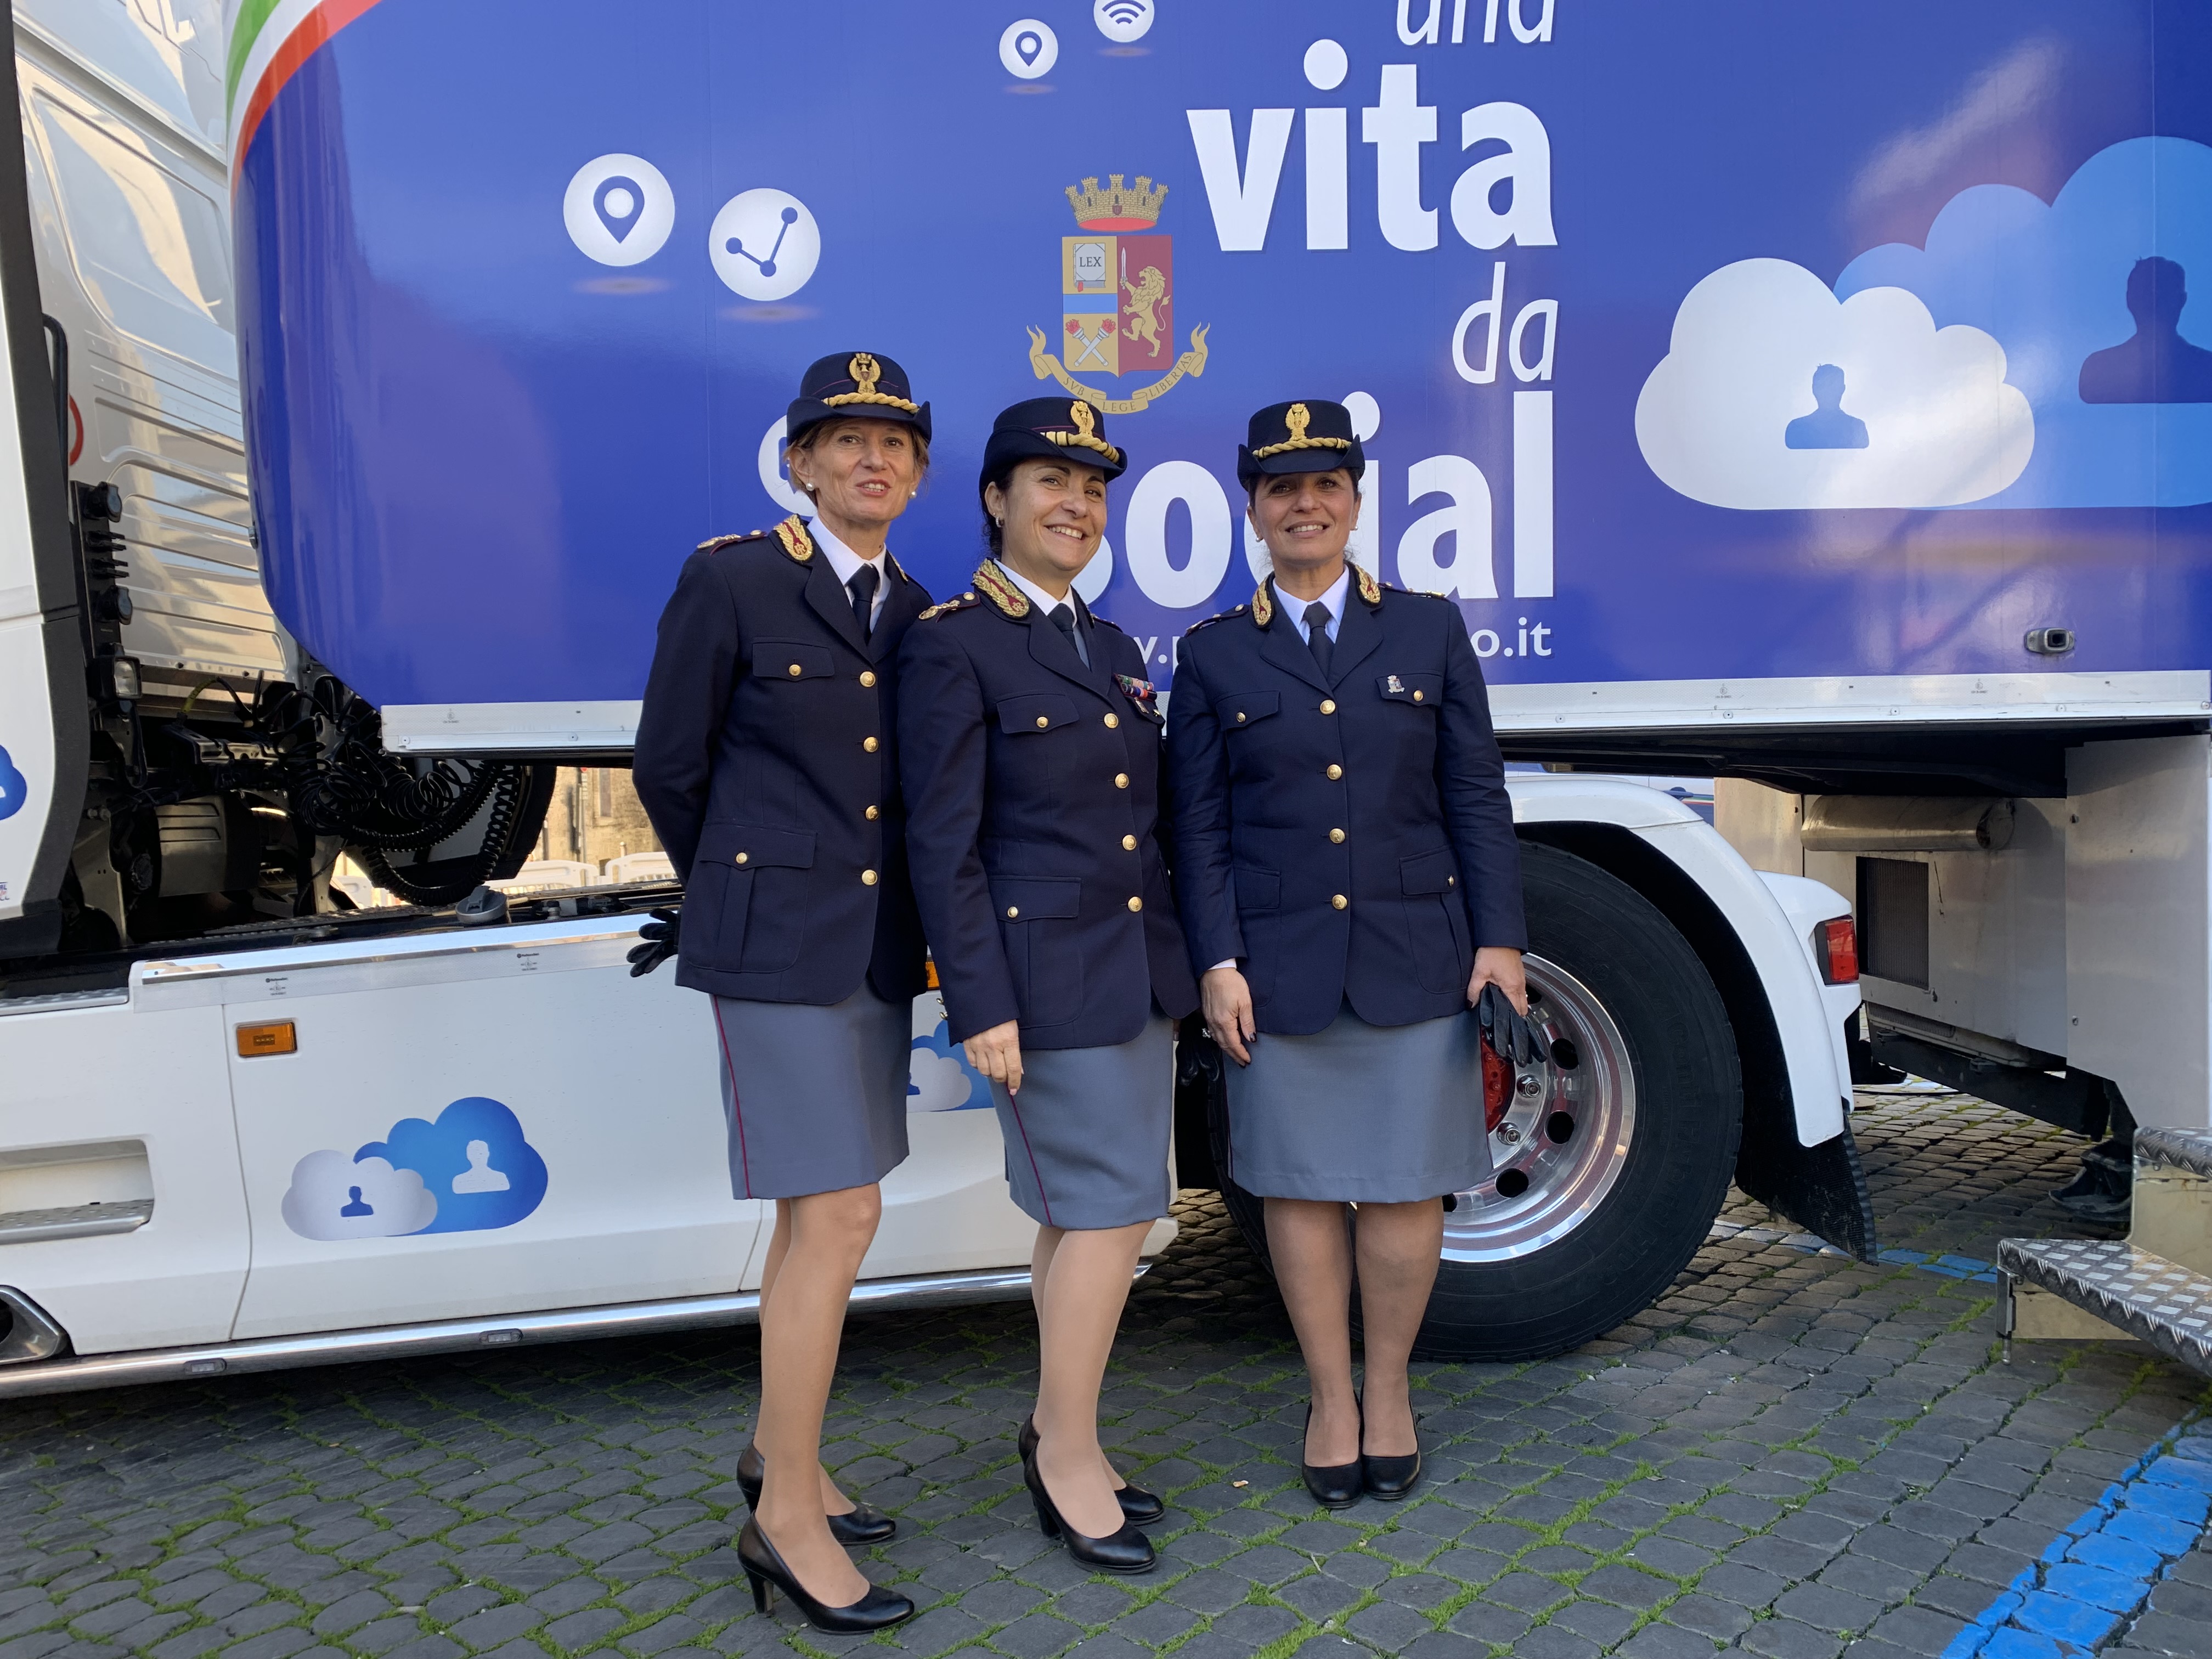 Grande successo ieri a Spoleto per la campagna educativa “Una vita da social” della Polizia di Stato